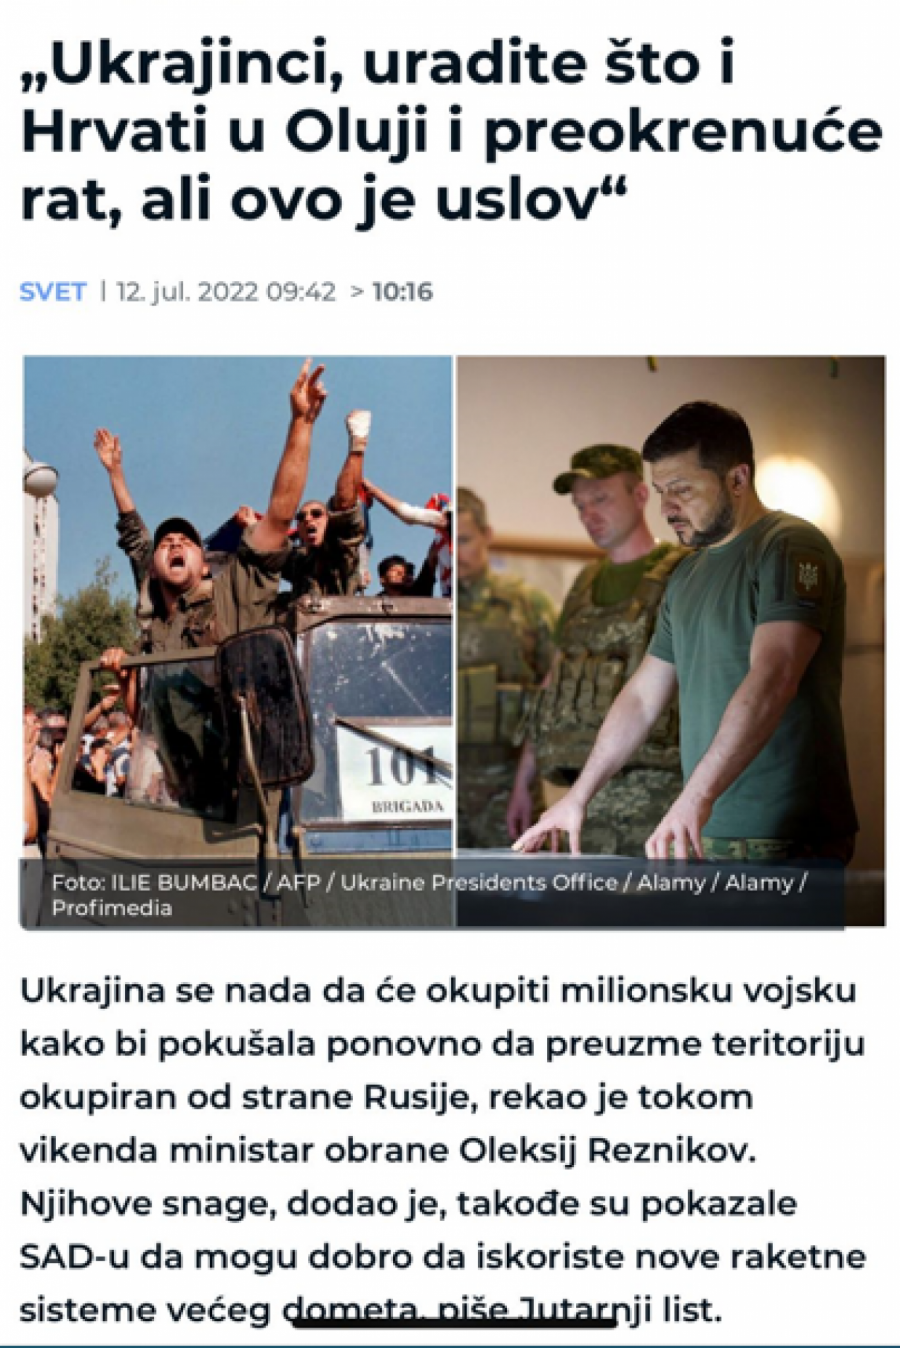 LUDILO TAJKUNSKIH MEDIJA Ukrajinci, ubijajte kao Hrvati u 